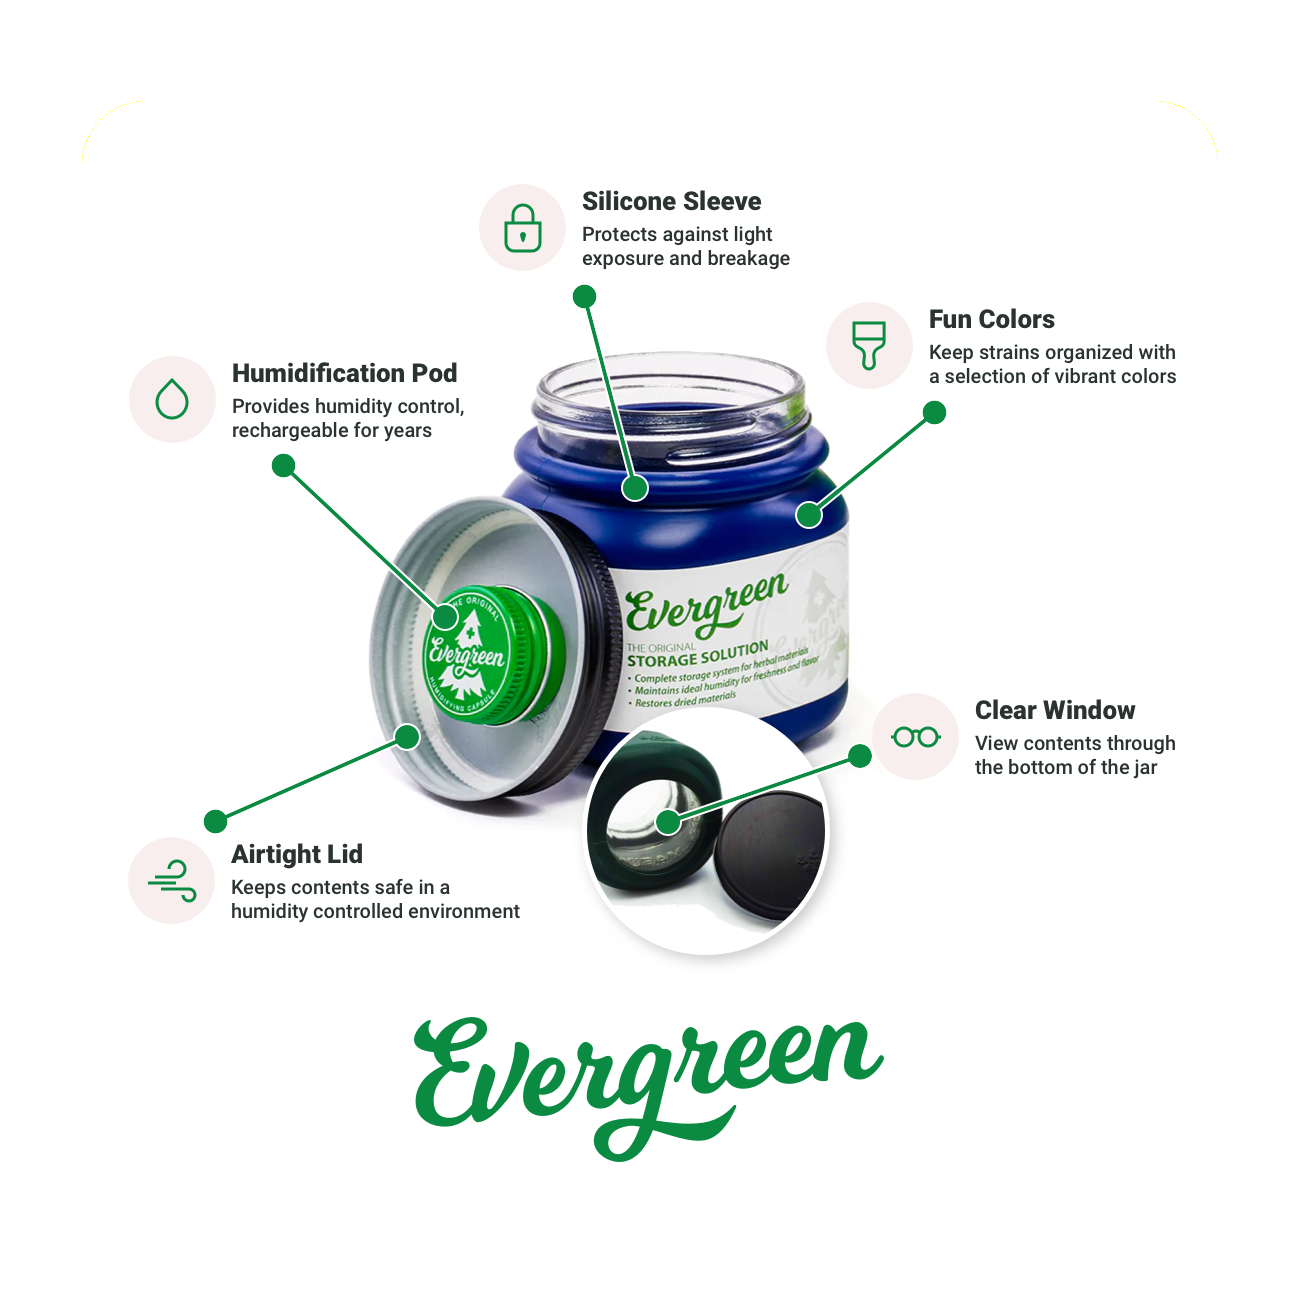 Evergreen Storage Solution benefits